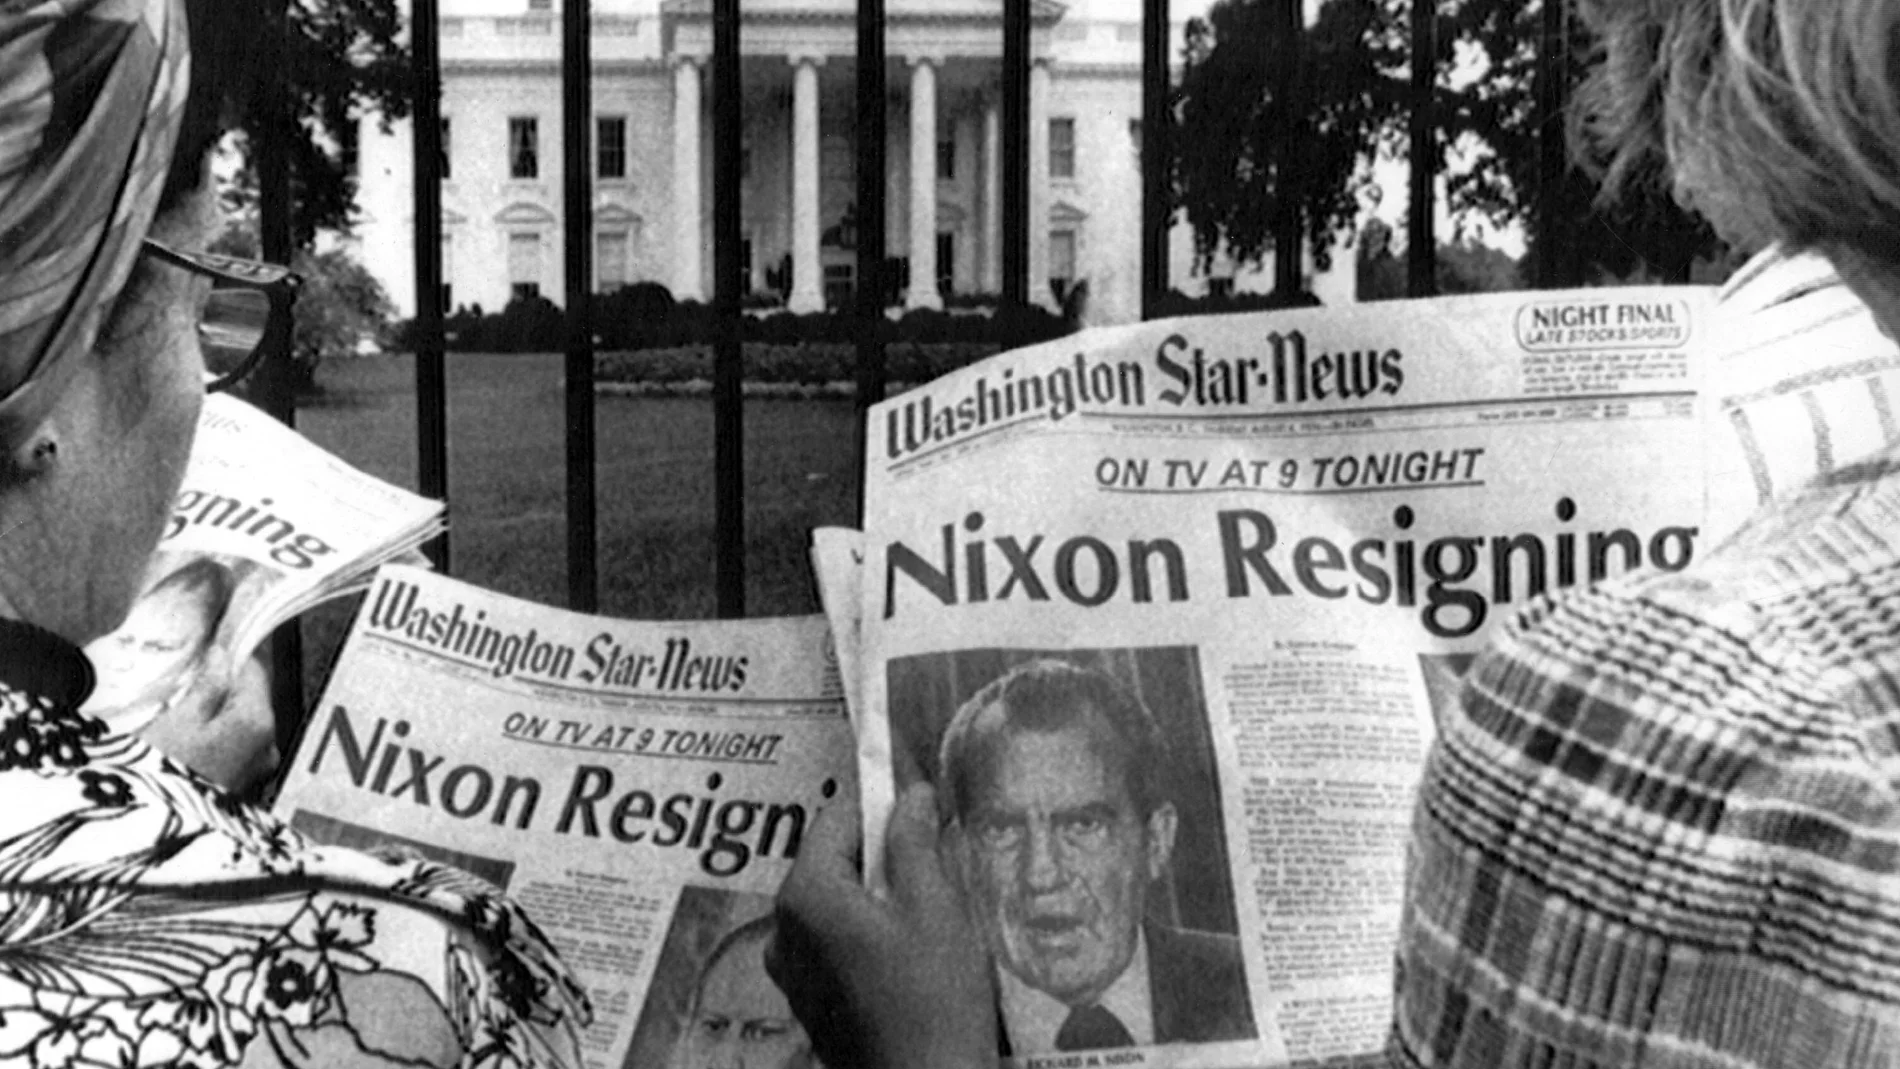 MD66. ARCHIVO-MADRID, 31-05-05.- Fotografía de archivo, tomada el 8 de agosto de 1974, en la que dos mujeres leen, frente a la Casa Blanca, los titulares de los periódicos que anunciaban la dimisión del presidente Richard Nixon por el "escándalo Watergate". El ex directivo del FBI Mark Felt desveló hoy el secreto mejor guardado desde hace 33 años en Estados Unidos: él asegura que fue la "Garganta profunda" que destapó el caso Watergate y provocó la caída del presidente Richard Nixon. EFE/ARCHIVO